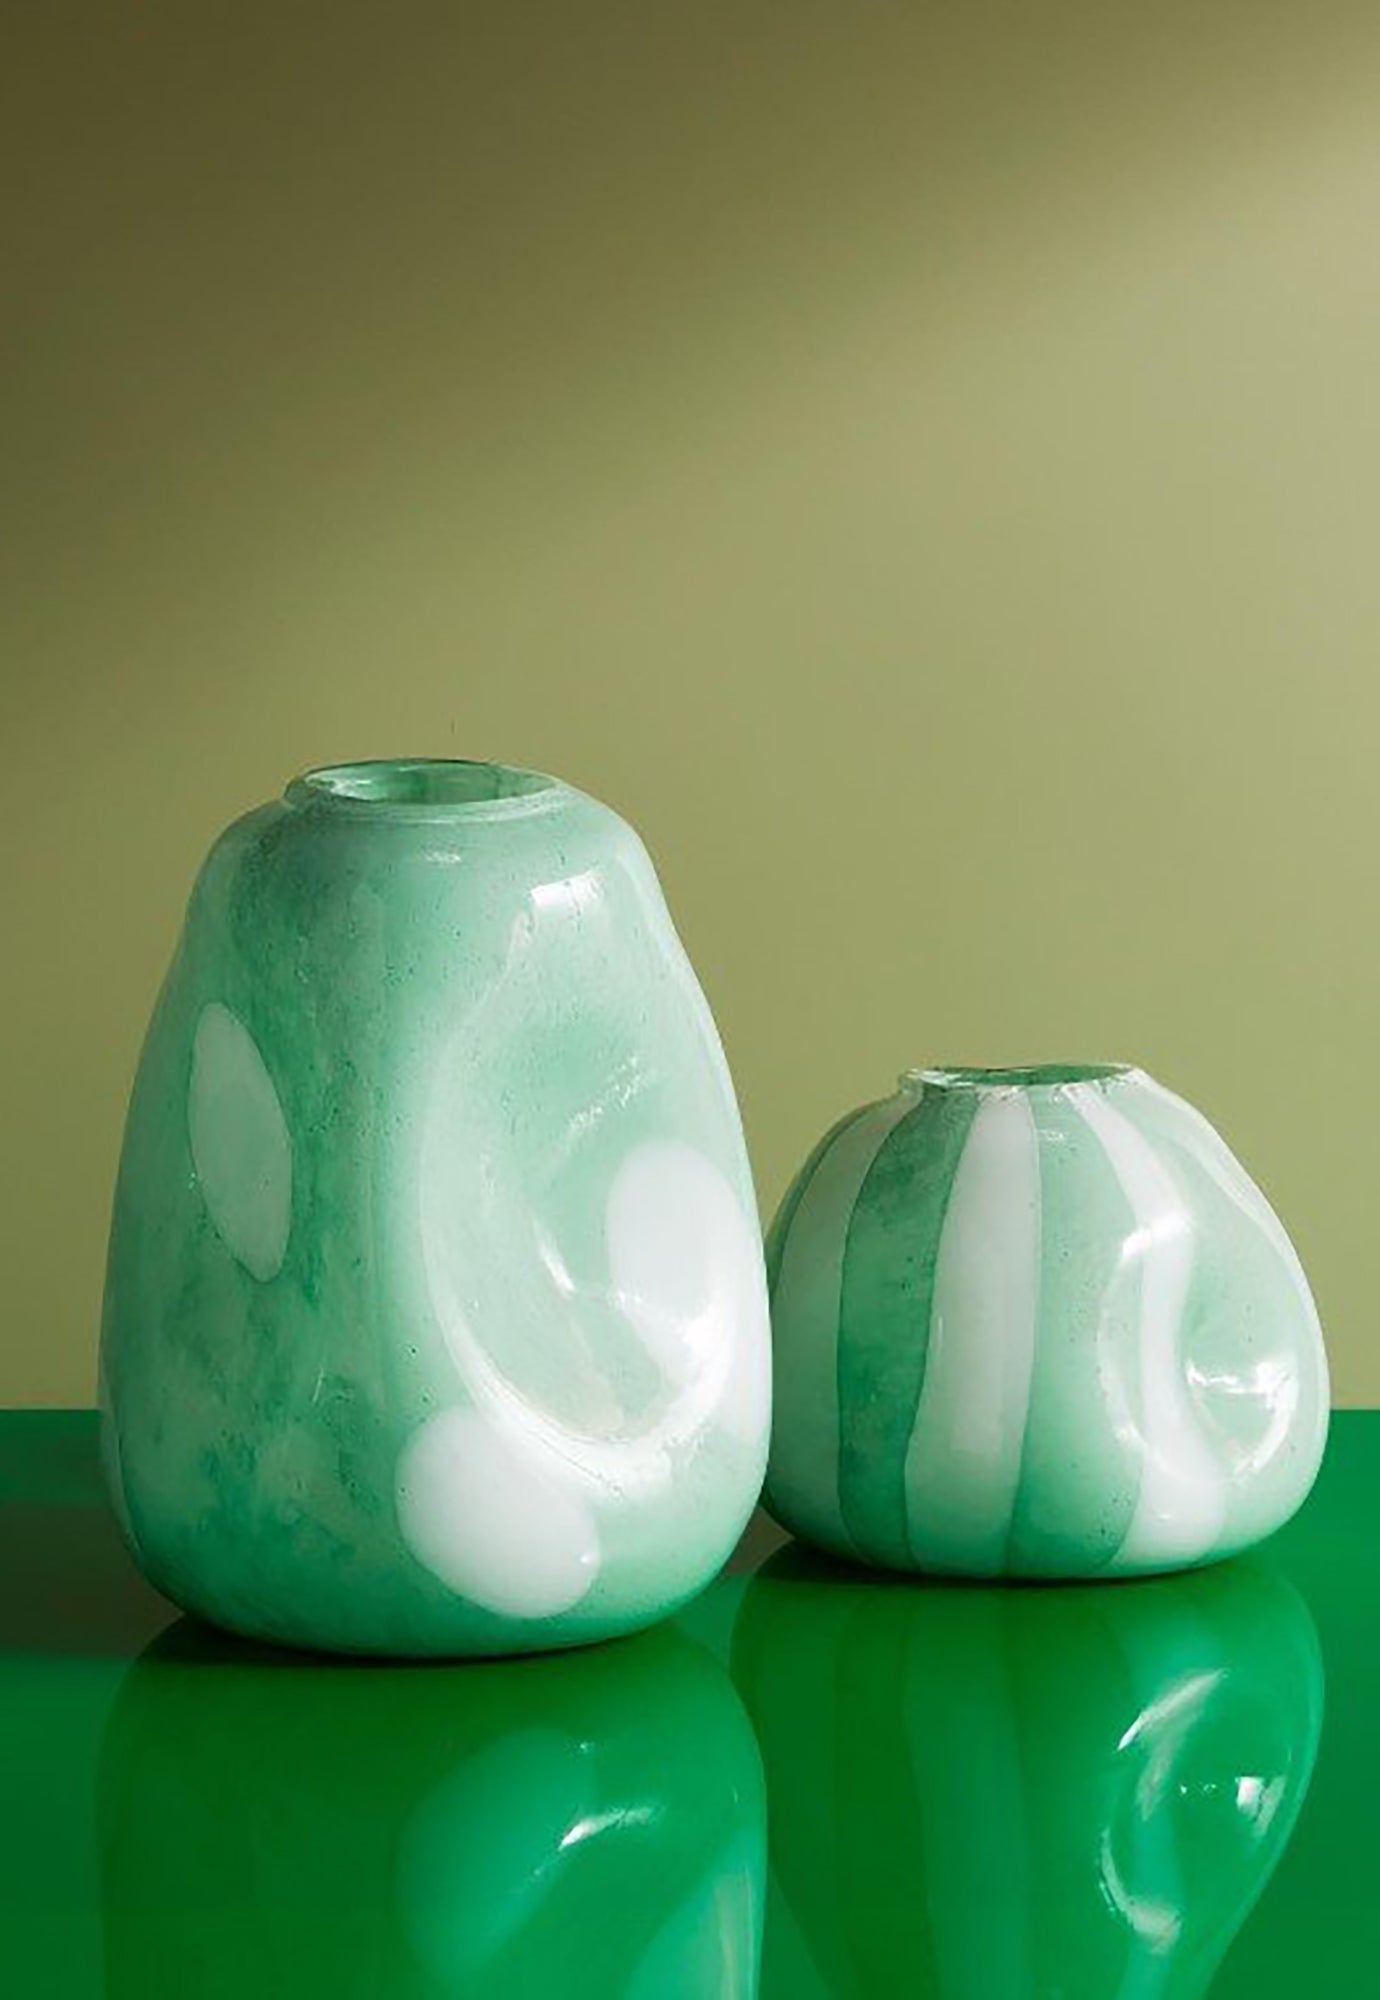 kas - spots vase - large mint